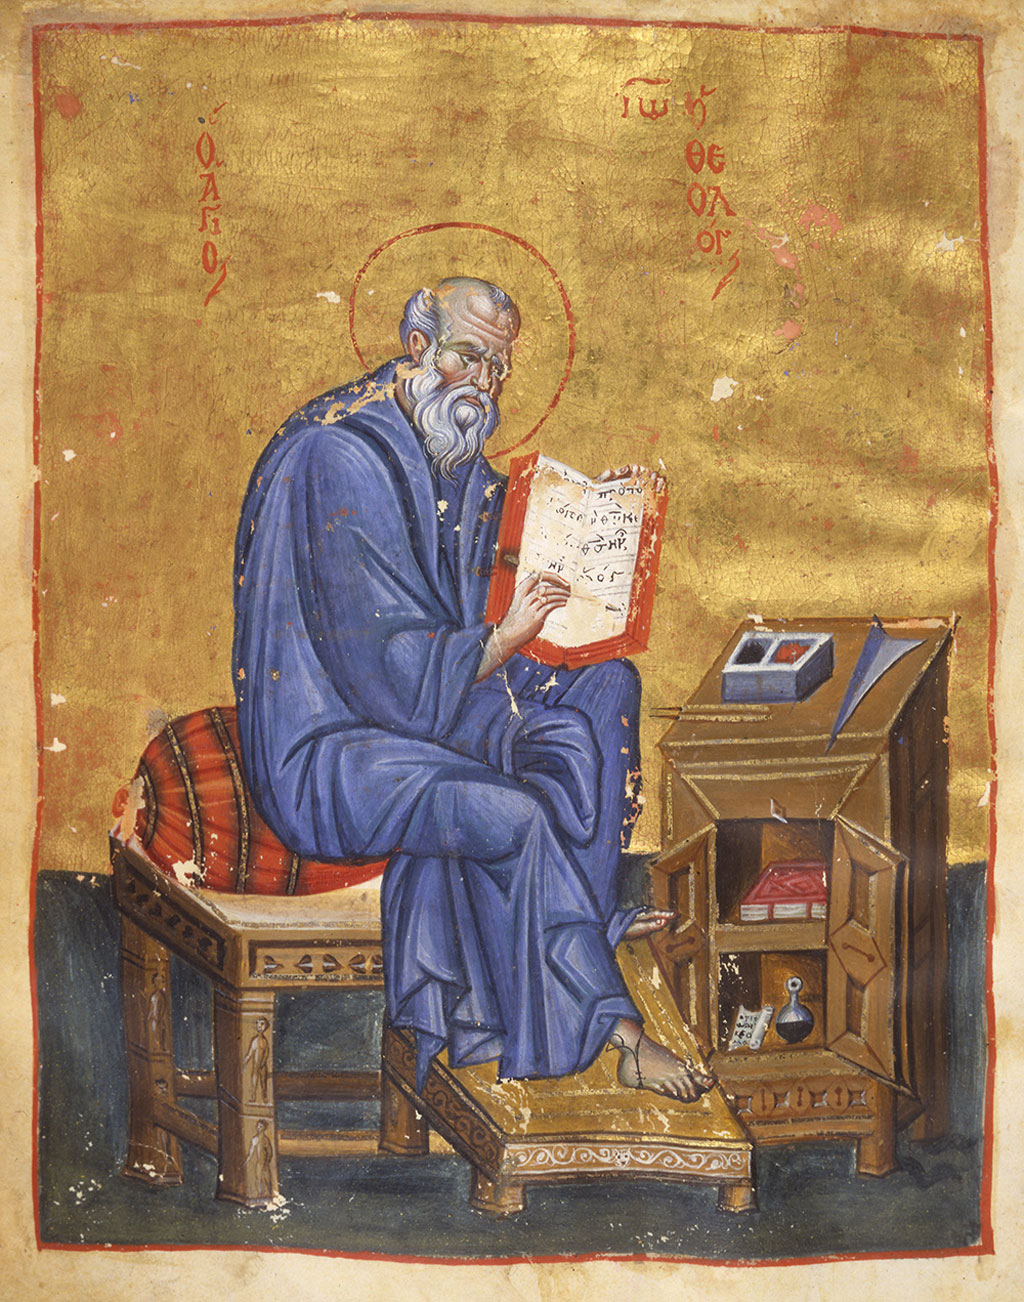 Ο άγιος Ιωάννης ο Θεολόγος. Μικρογραφία του 13ου αιώνα. Πηγή: www.princeton.edu/hellenic/gallery/